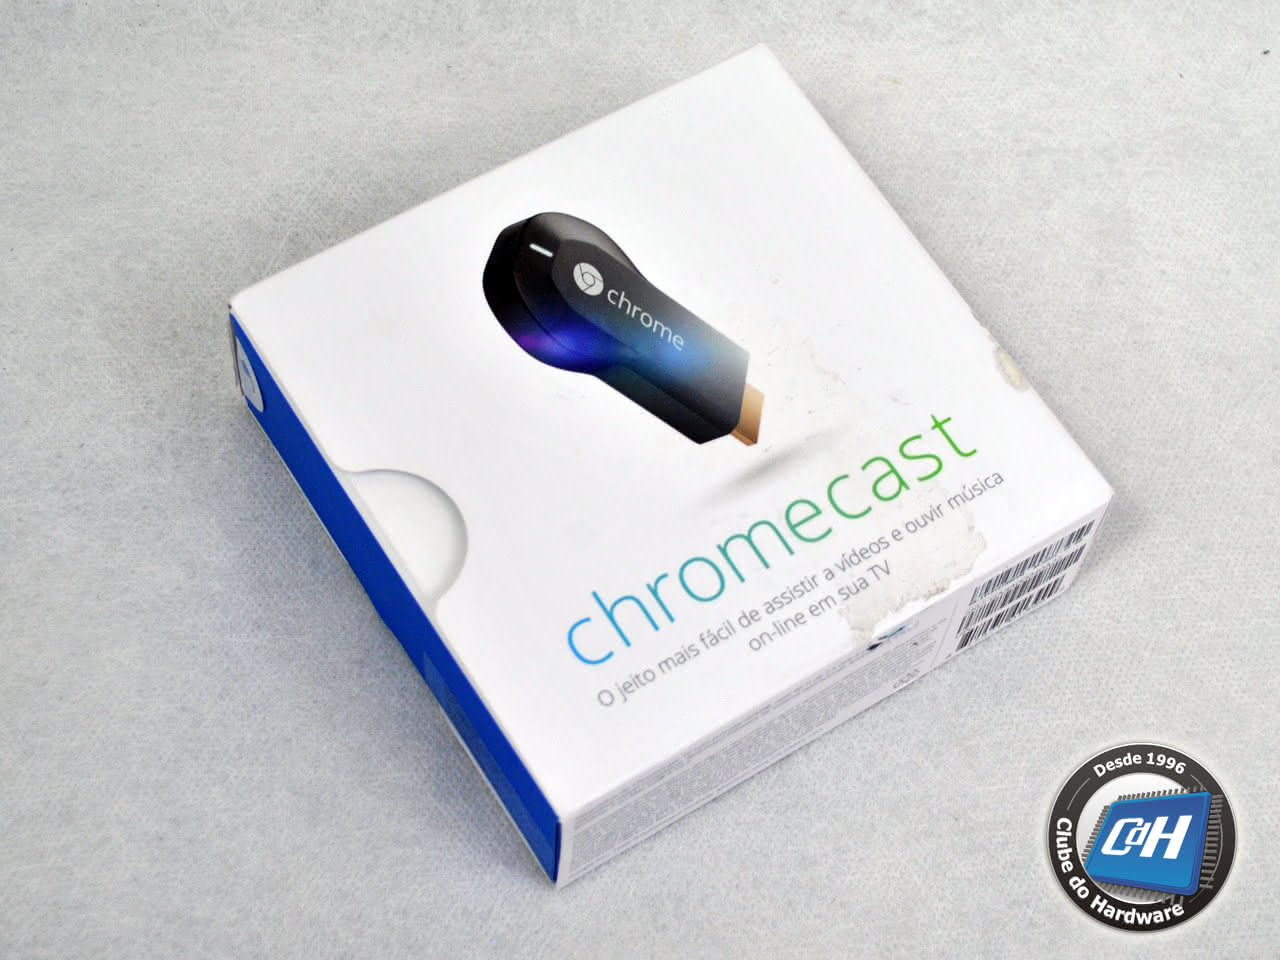 Teste do Google Chromecast